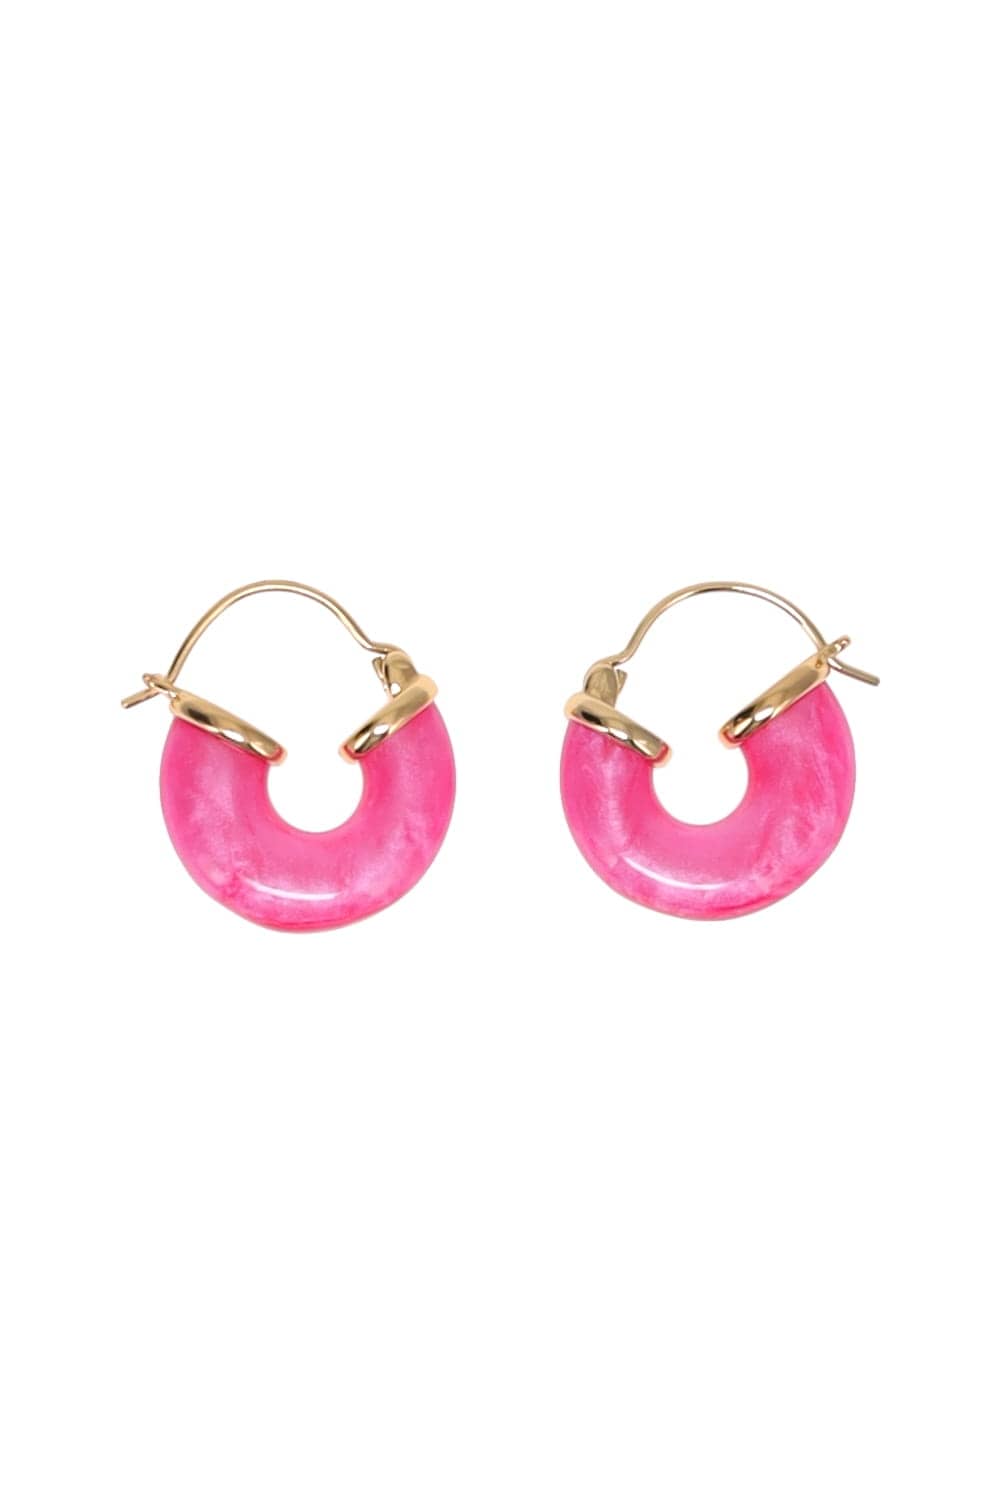 Anni Lu Petit Swell Pink Lotus Hoop Earrings